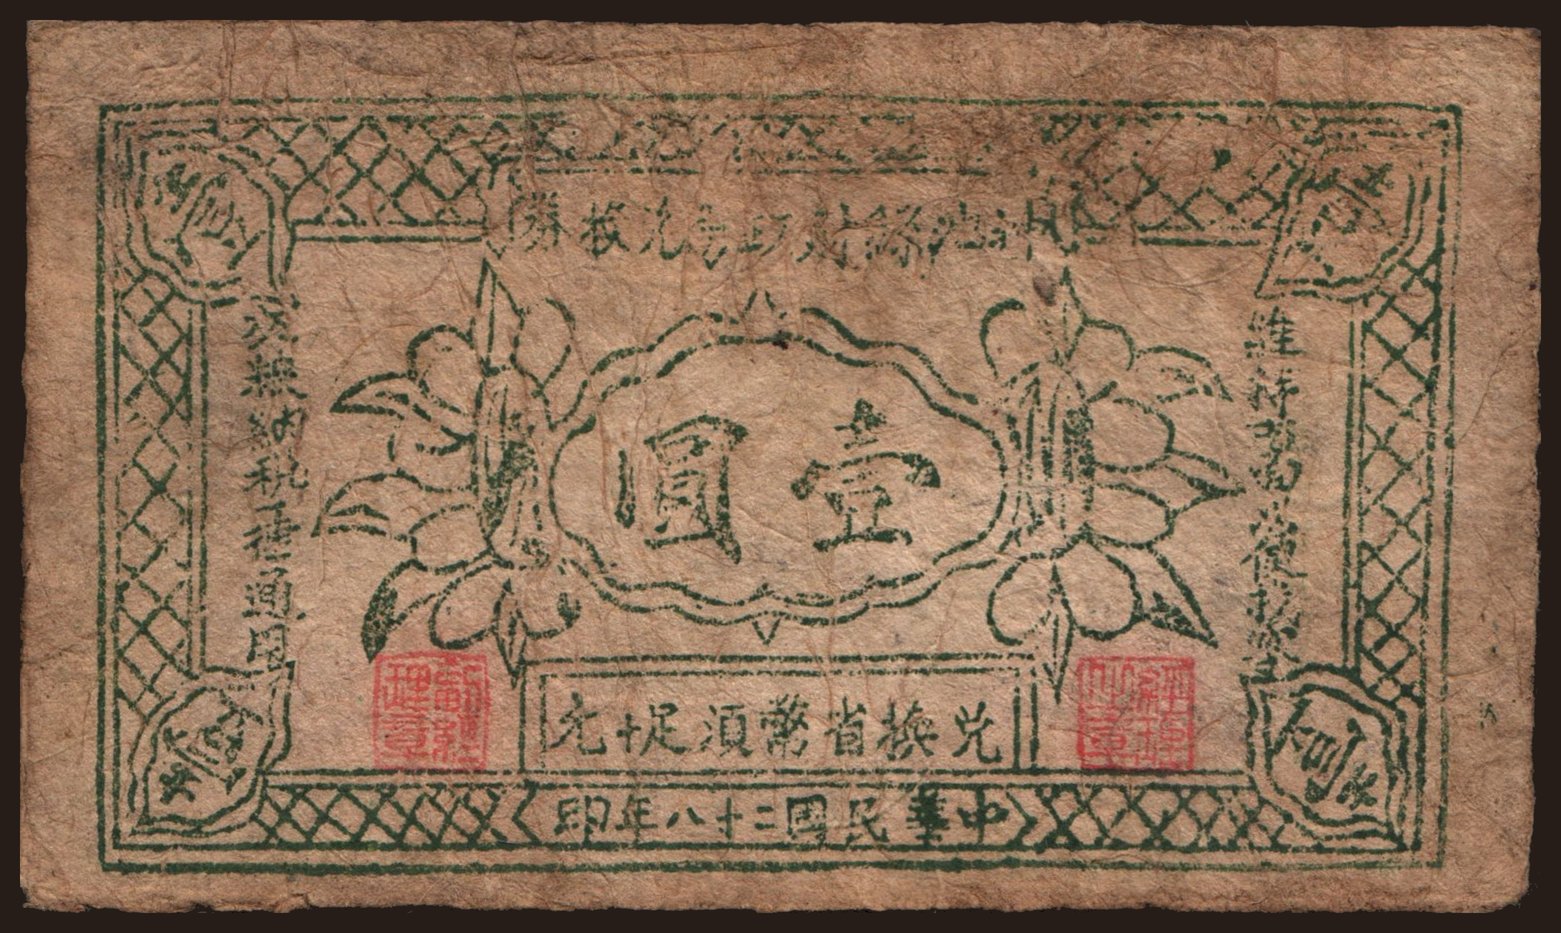 Shanxi Province/ Bureau of Finances in Shenchi County, 1 yuan, 1939